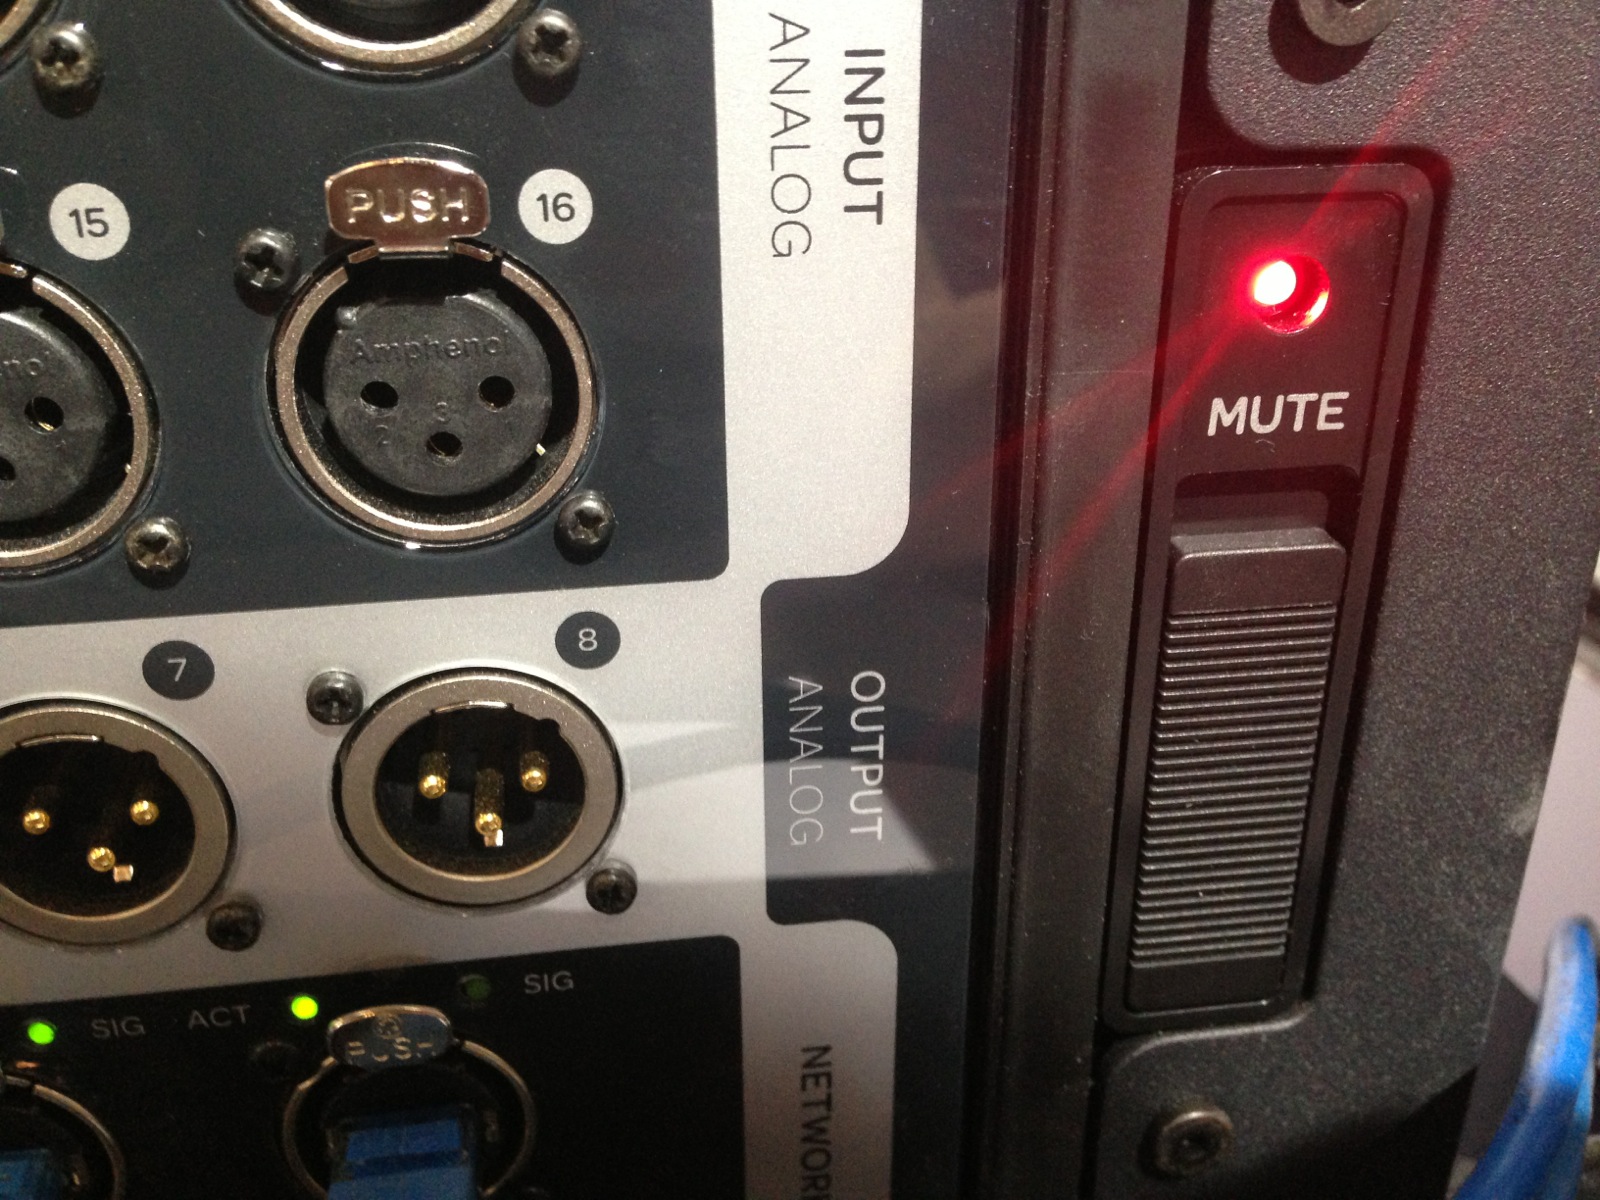 mute锁,可快速将所有通道静音,防止拔线时候的爆音: 注意到了接口箱带